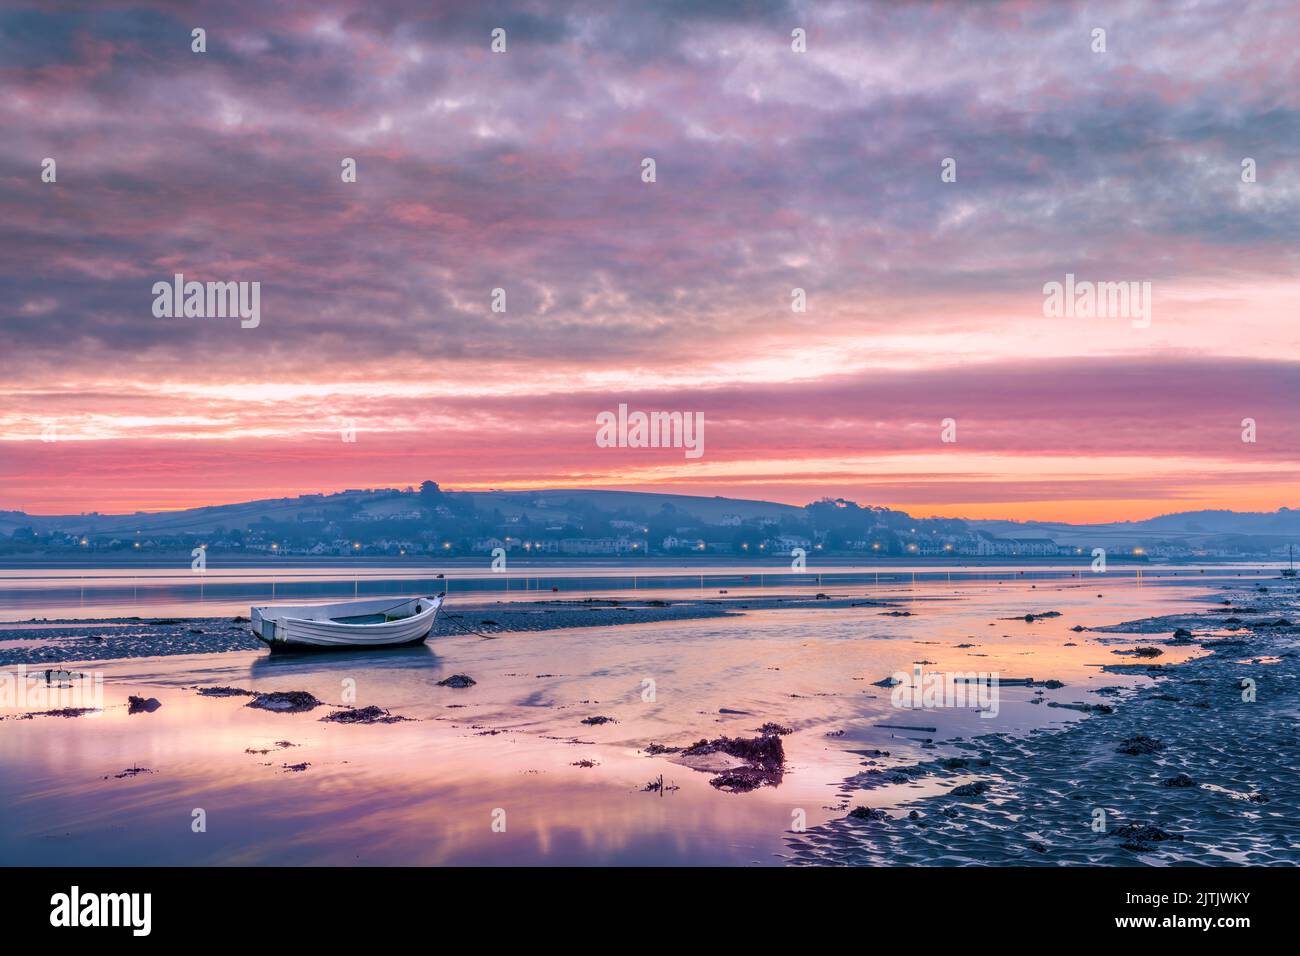 Le ciel se réfléchit dans l'eau de la marée entrante alors que l'aube se brise au-dessus du petit vilage côtier d'Insow, dans le Devon du Nord, en Angleterre. Banque D'Images